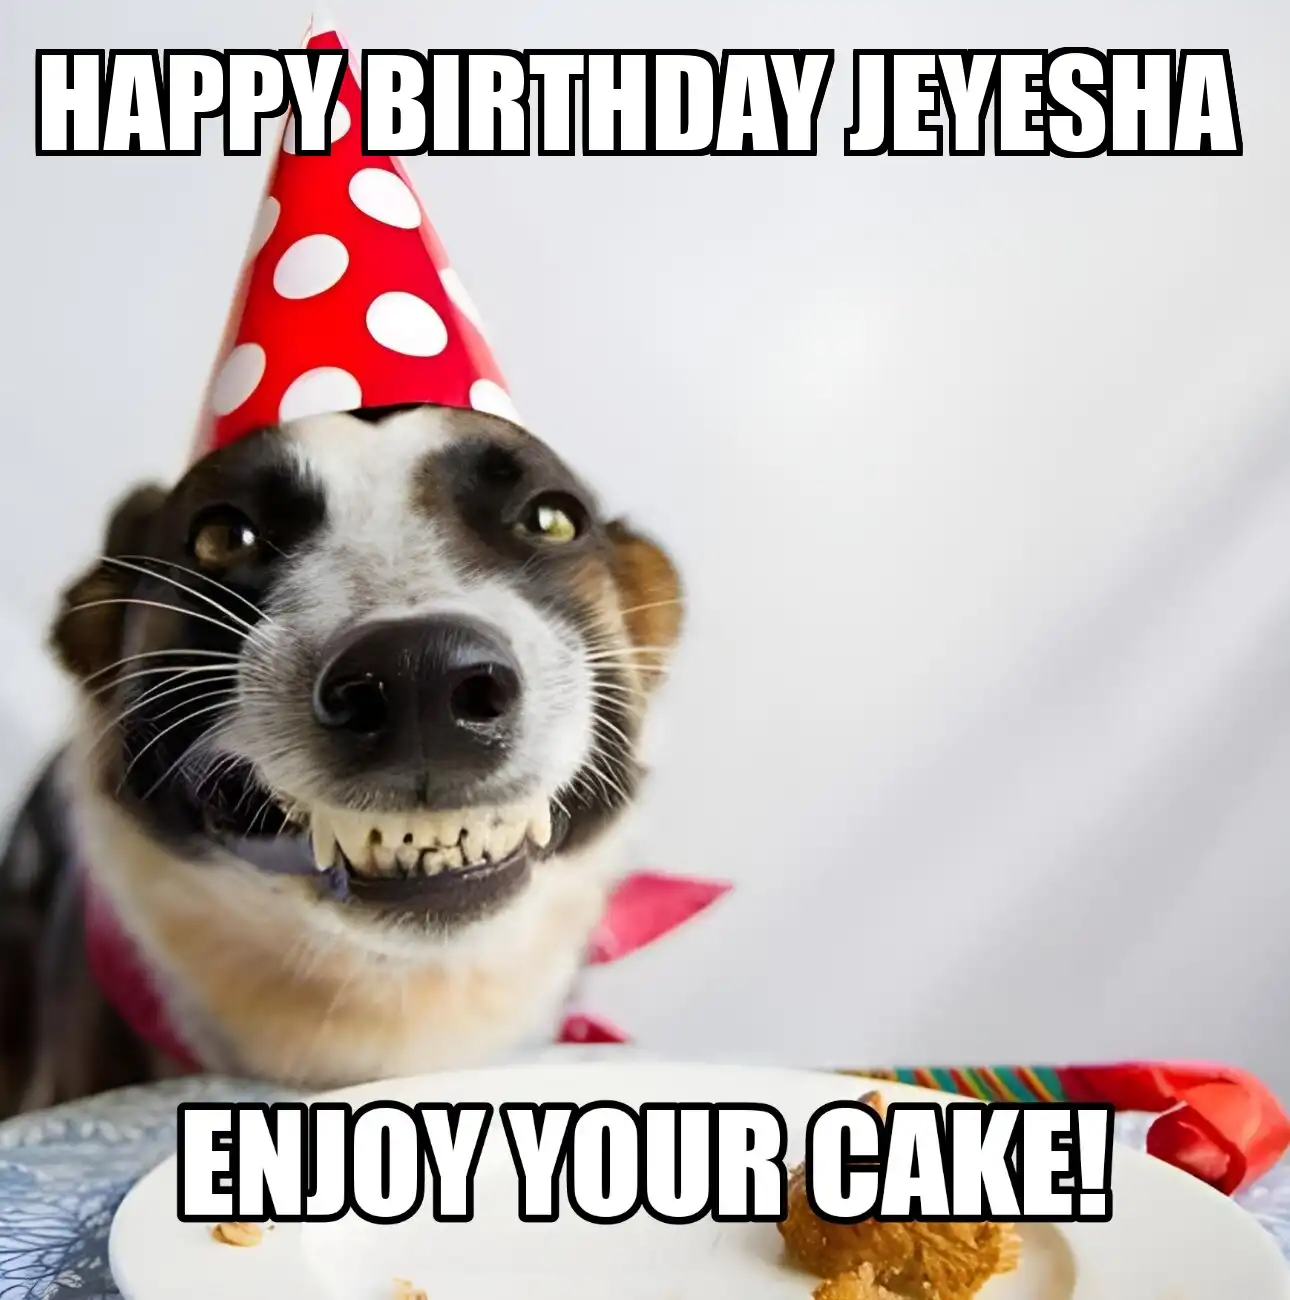 Happy Birthday Jeyesha Enjoy Your Cake Dog Meme